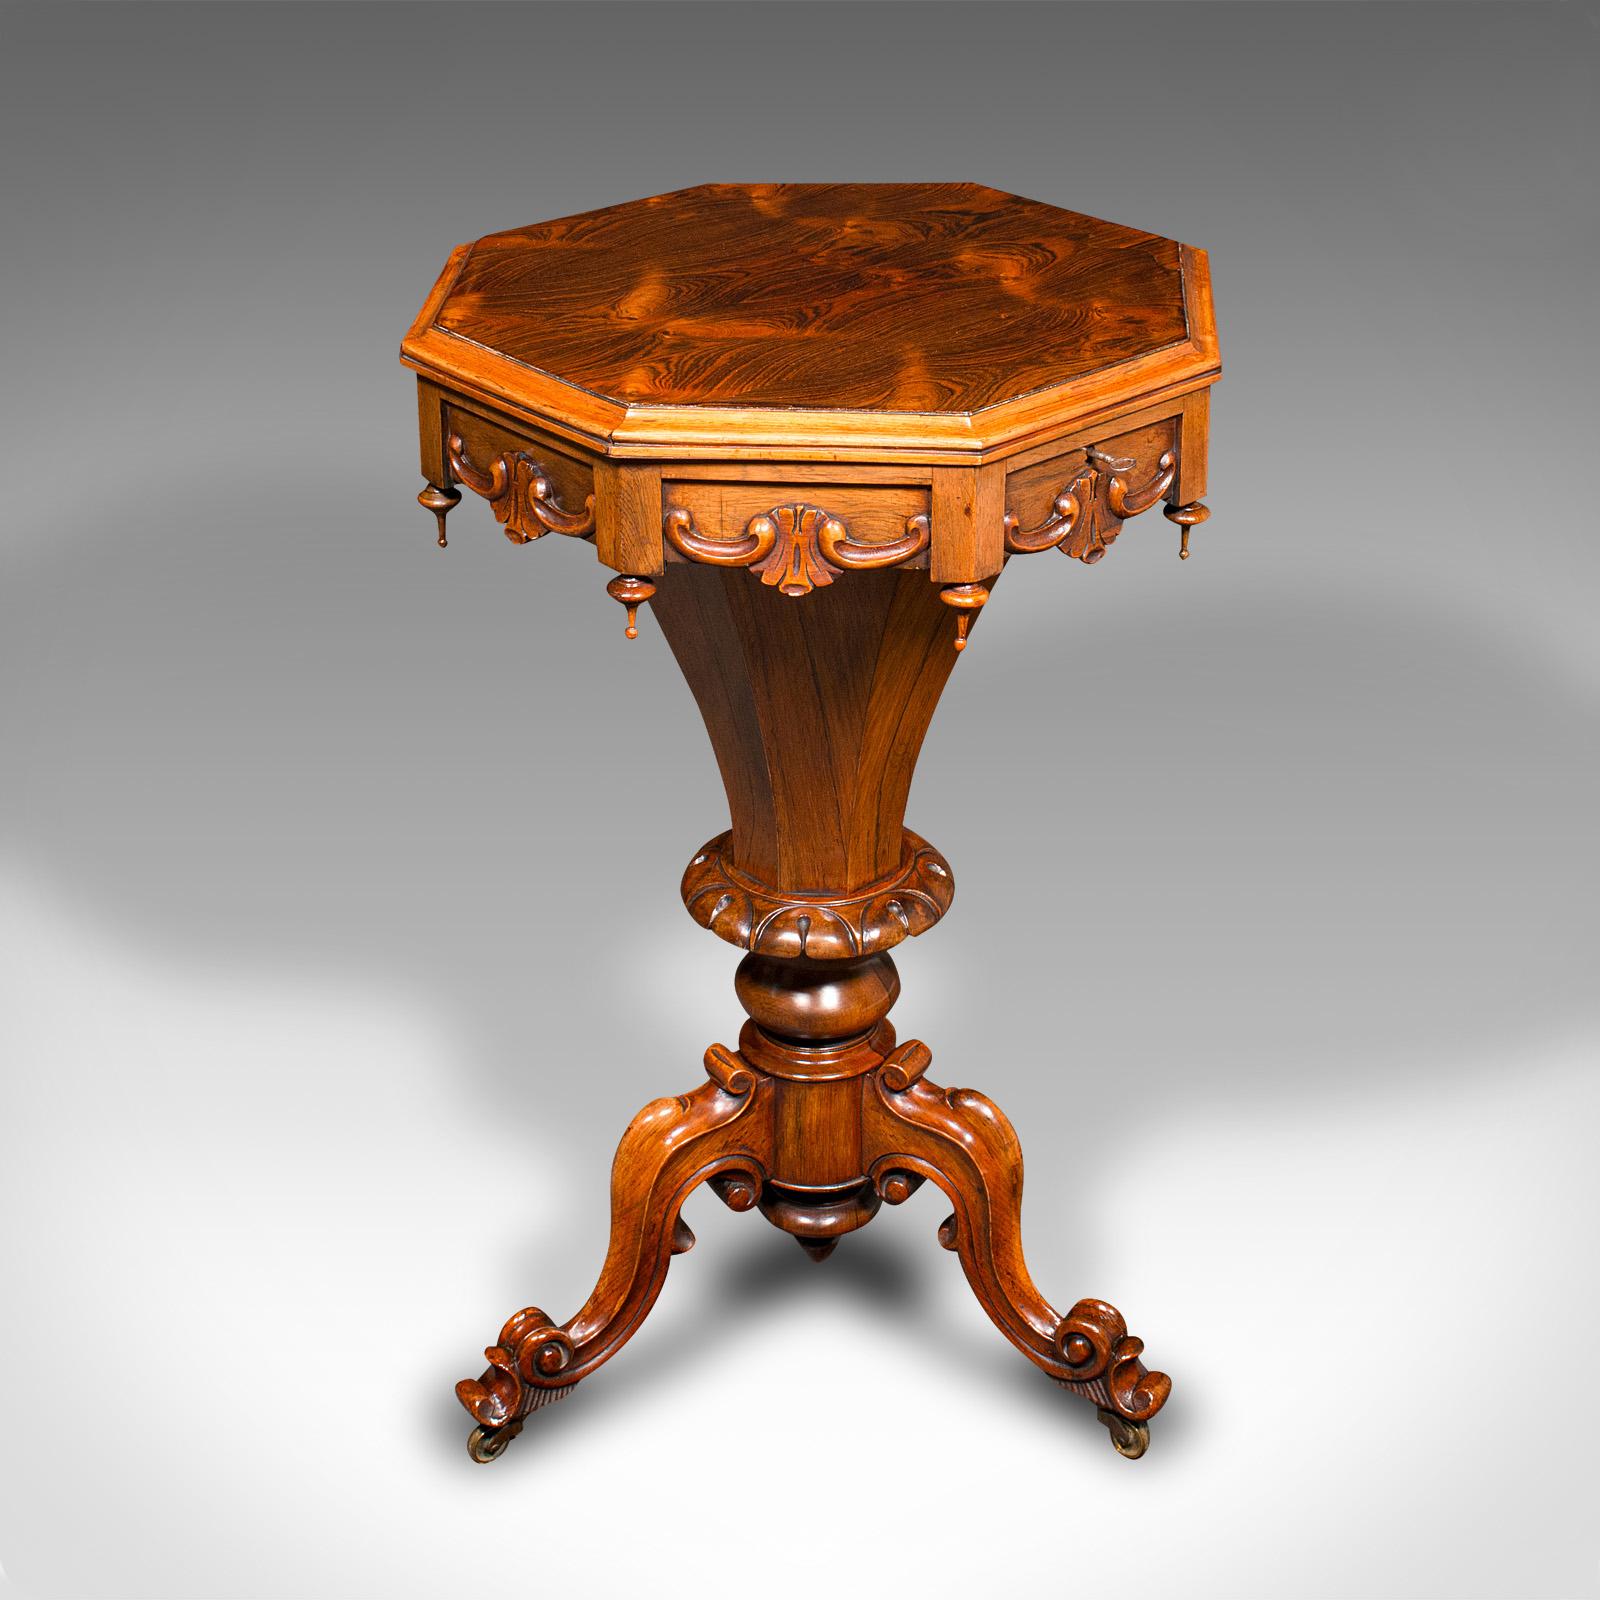 Il s'agit d'une ancienne table de couture à trompette. Table de travail pour dames en bois de rose, datant du début de la période victorienne, vers 1840.

Exemple frappant d'une belle apparence et d'une finition intérieure vibrante
Patine